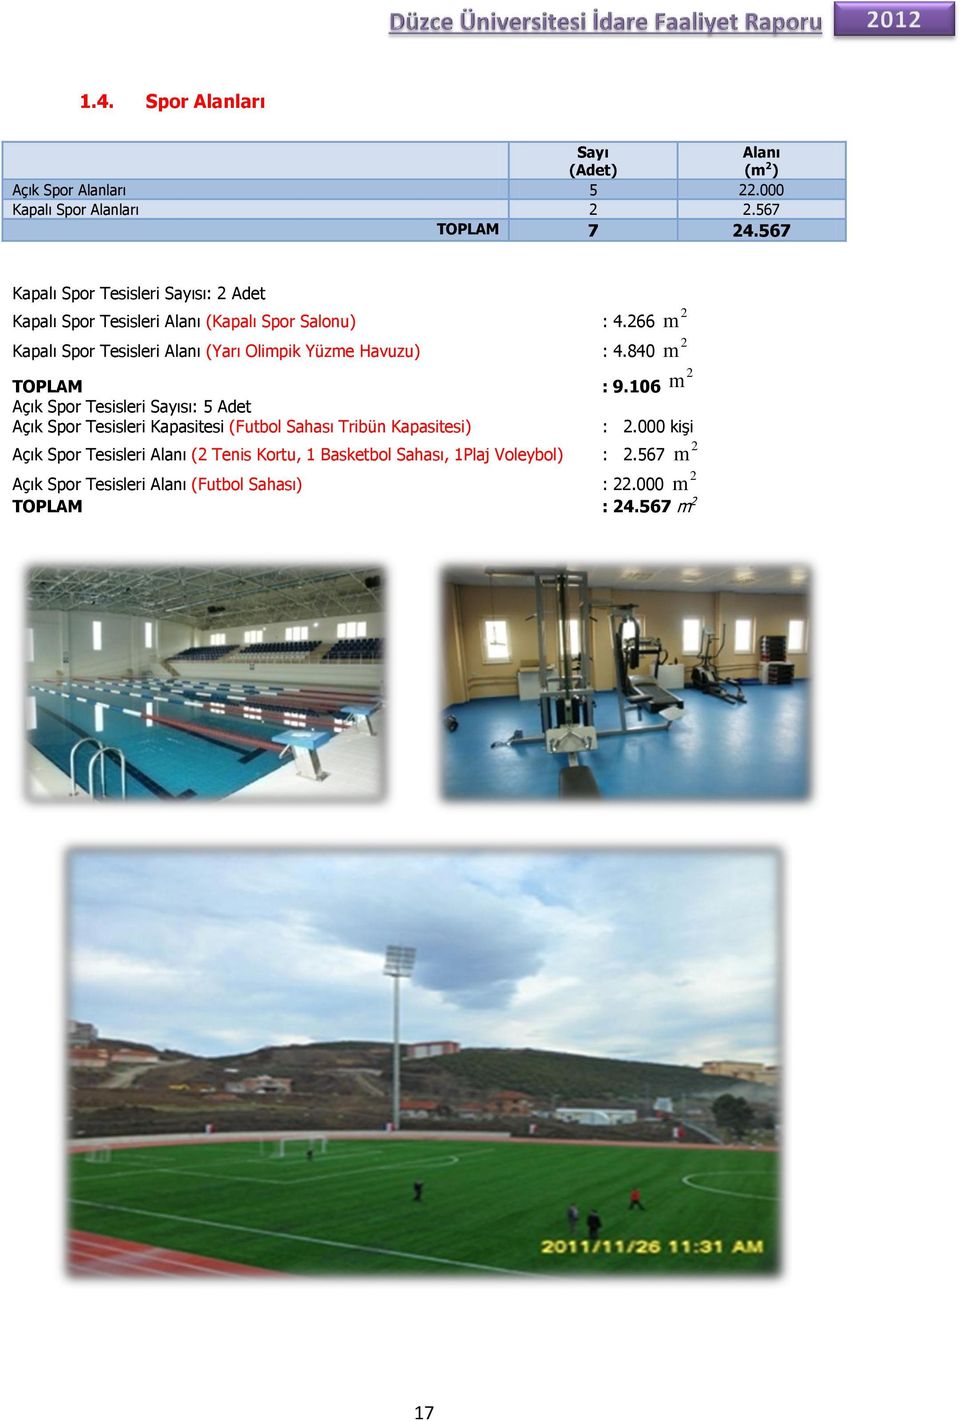 266 Kapalı Spor Tesisleri Alanı (Yarı Olimpik Yüzme Havuzu) : 4.840 TOPLAM : 9.